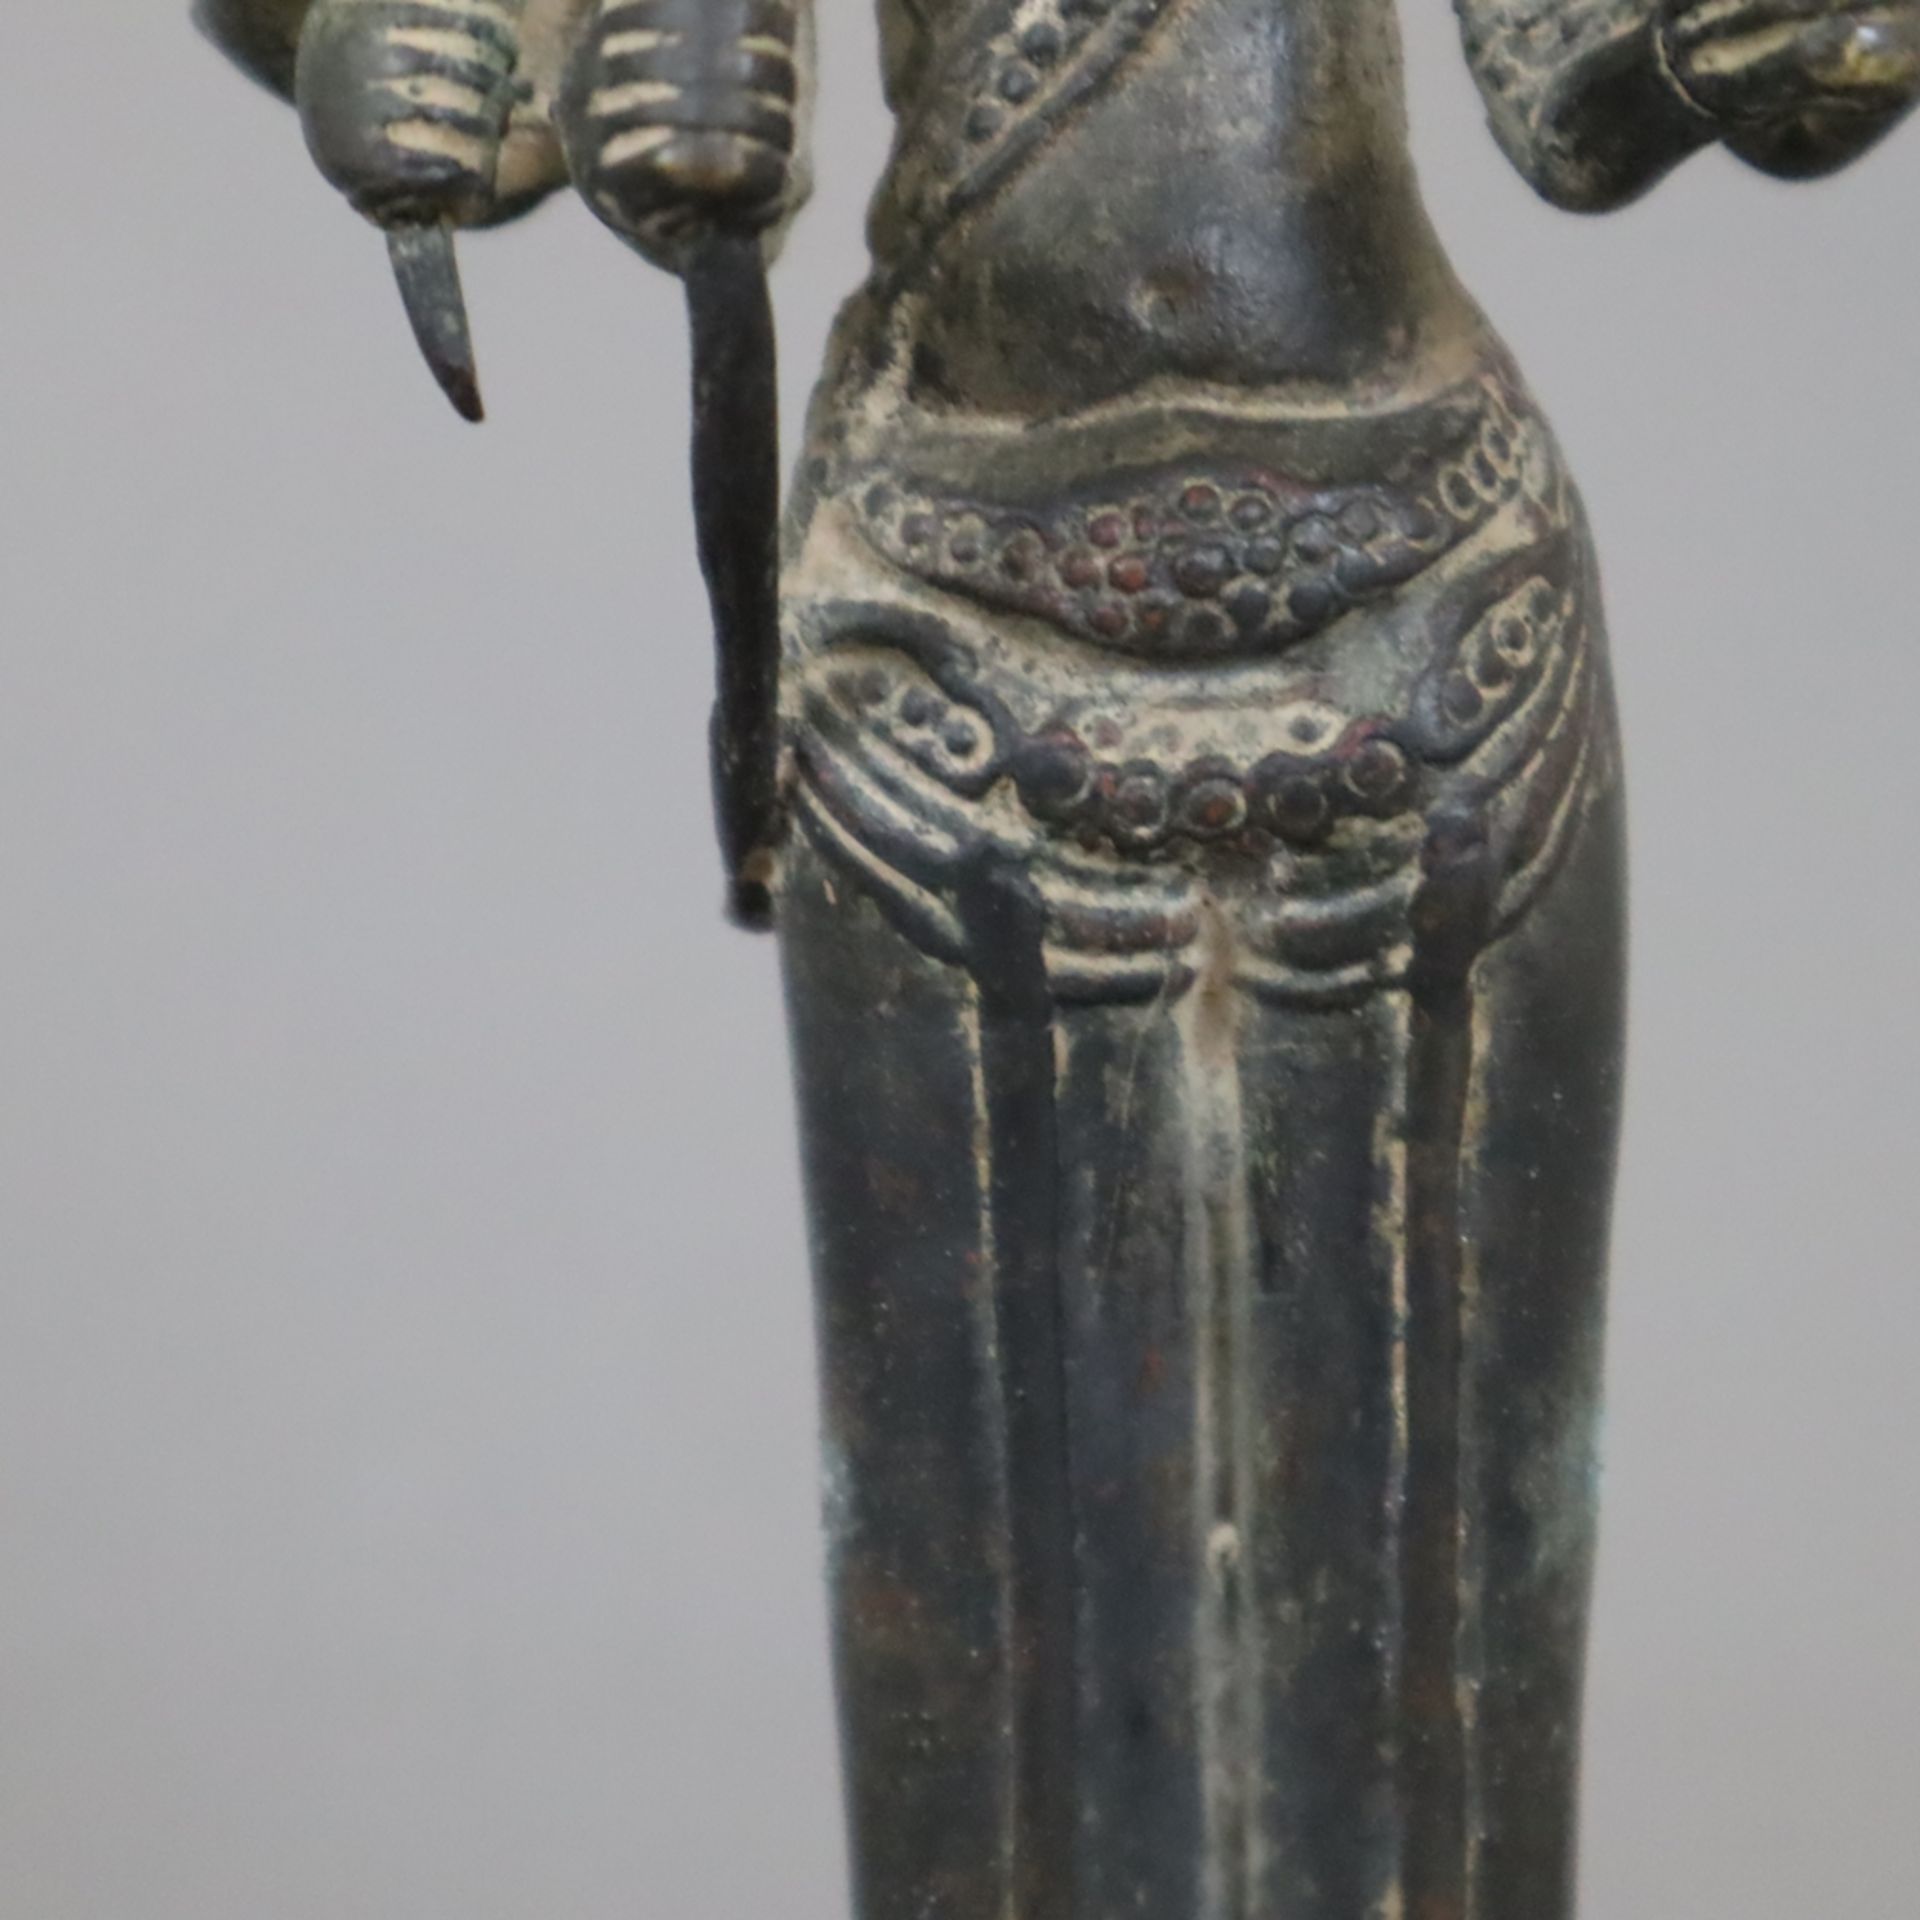 Bronzefigur einer Khmer-Gottheit - wohl Lokeshvara bzw. Shiva, im Angkor-Stil, Bronze auf Holzsocke - Bild 6 aus 7